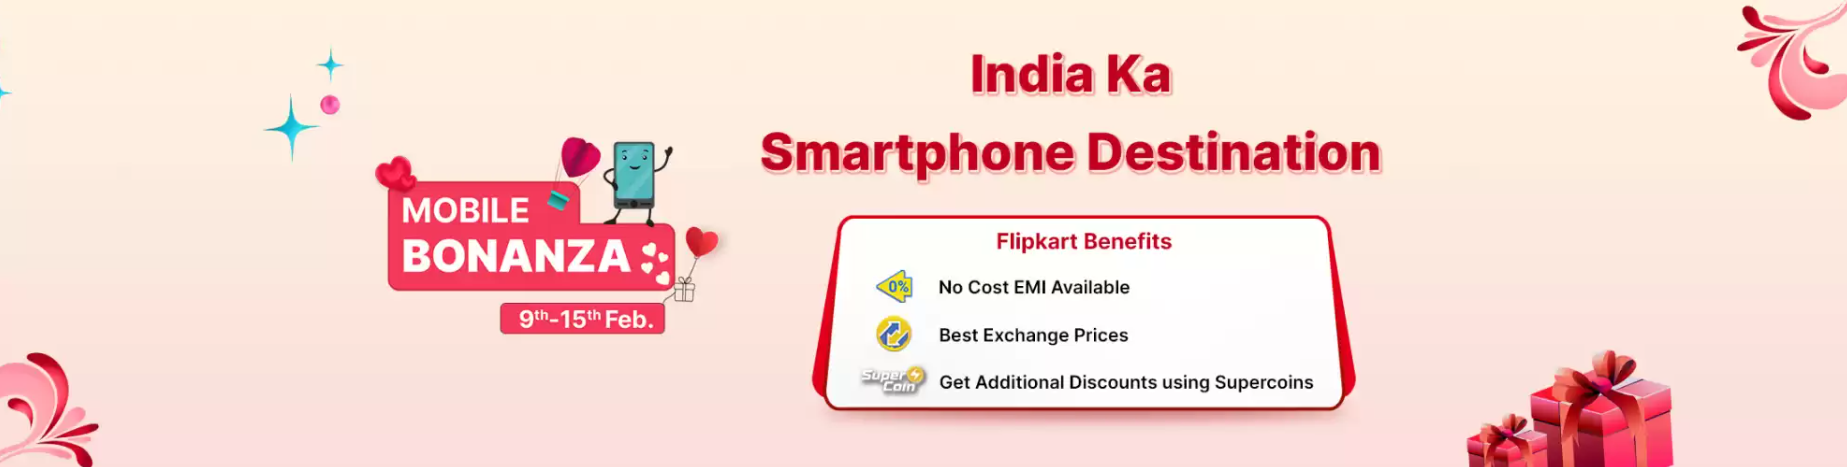 Flipkart Mobile offers